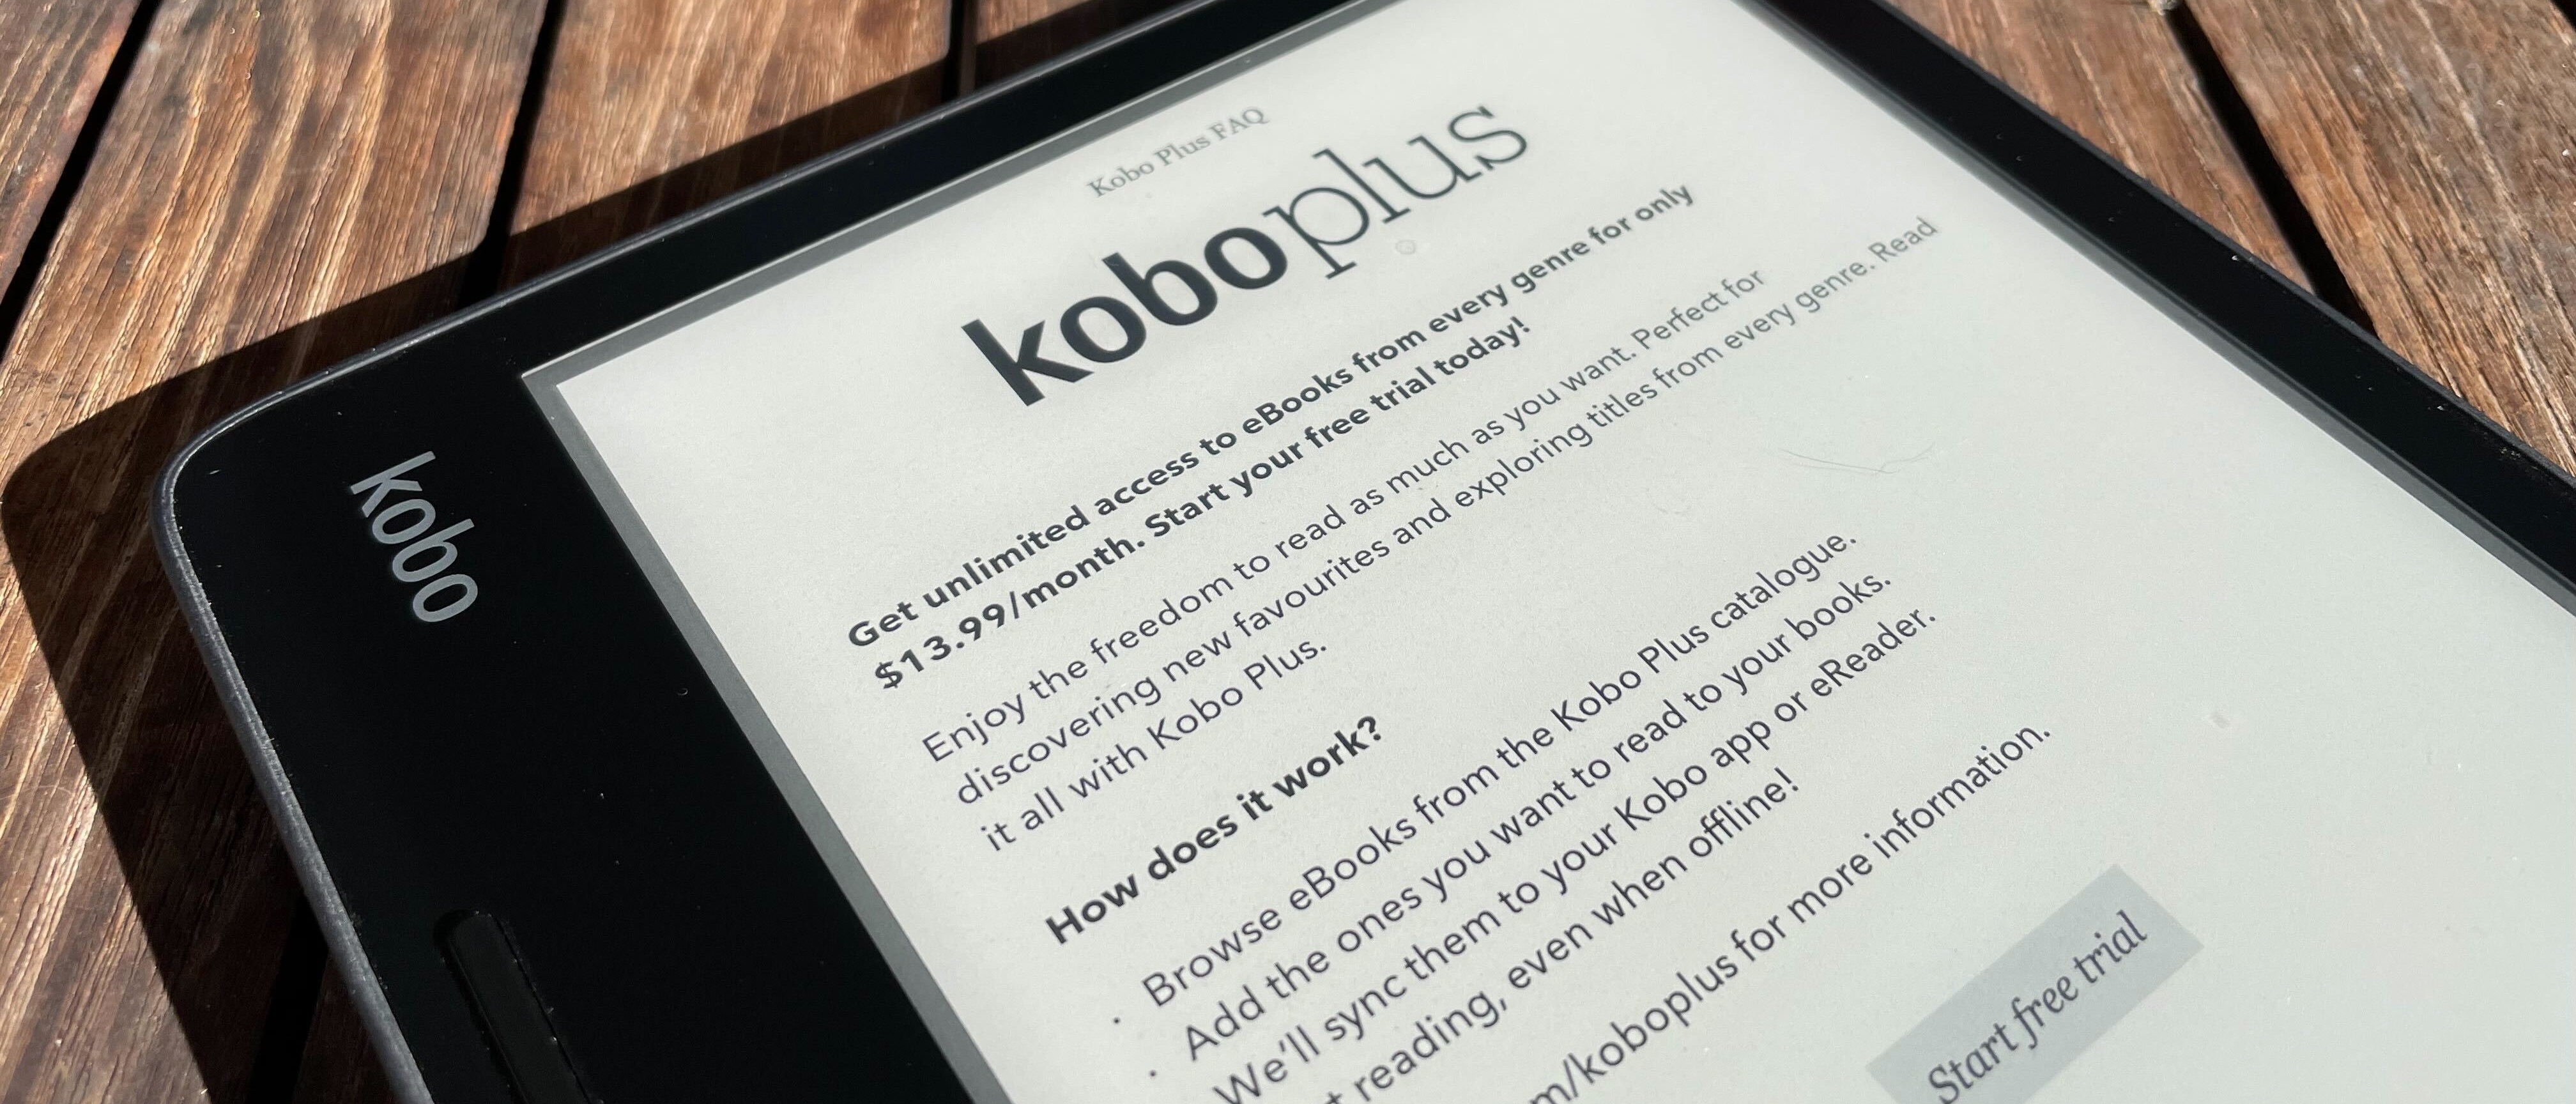 Kobo Sage: In-Depth Review 